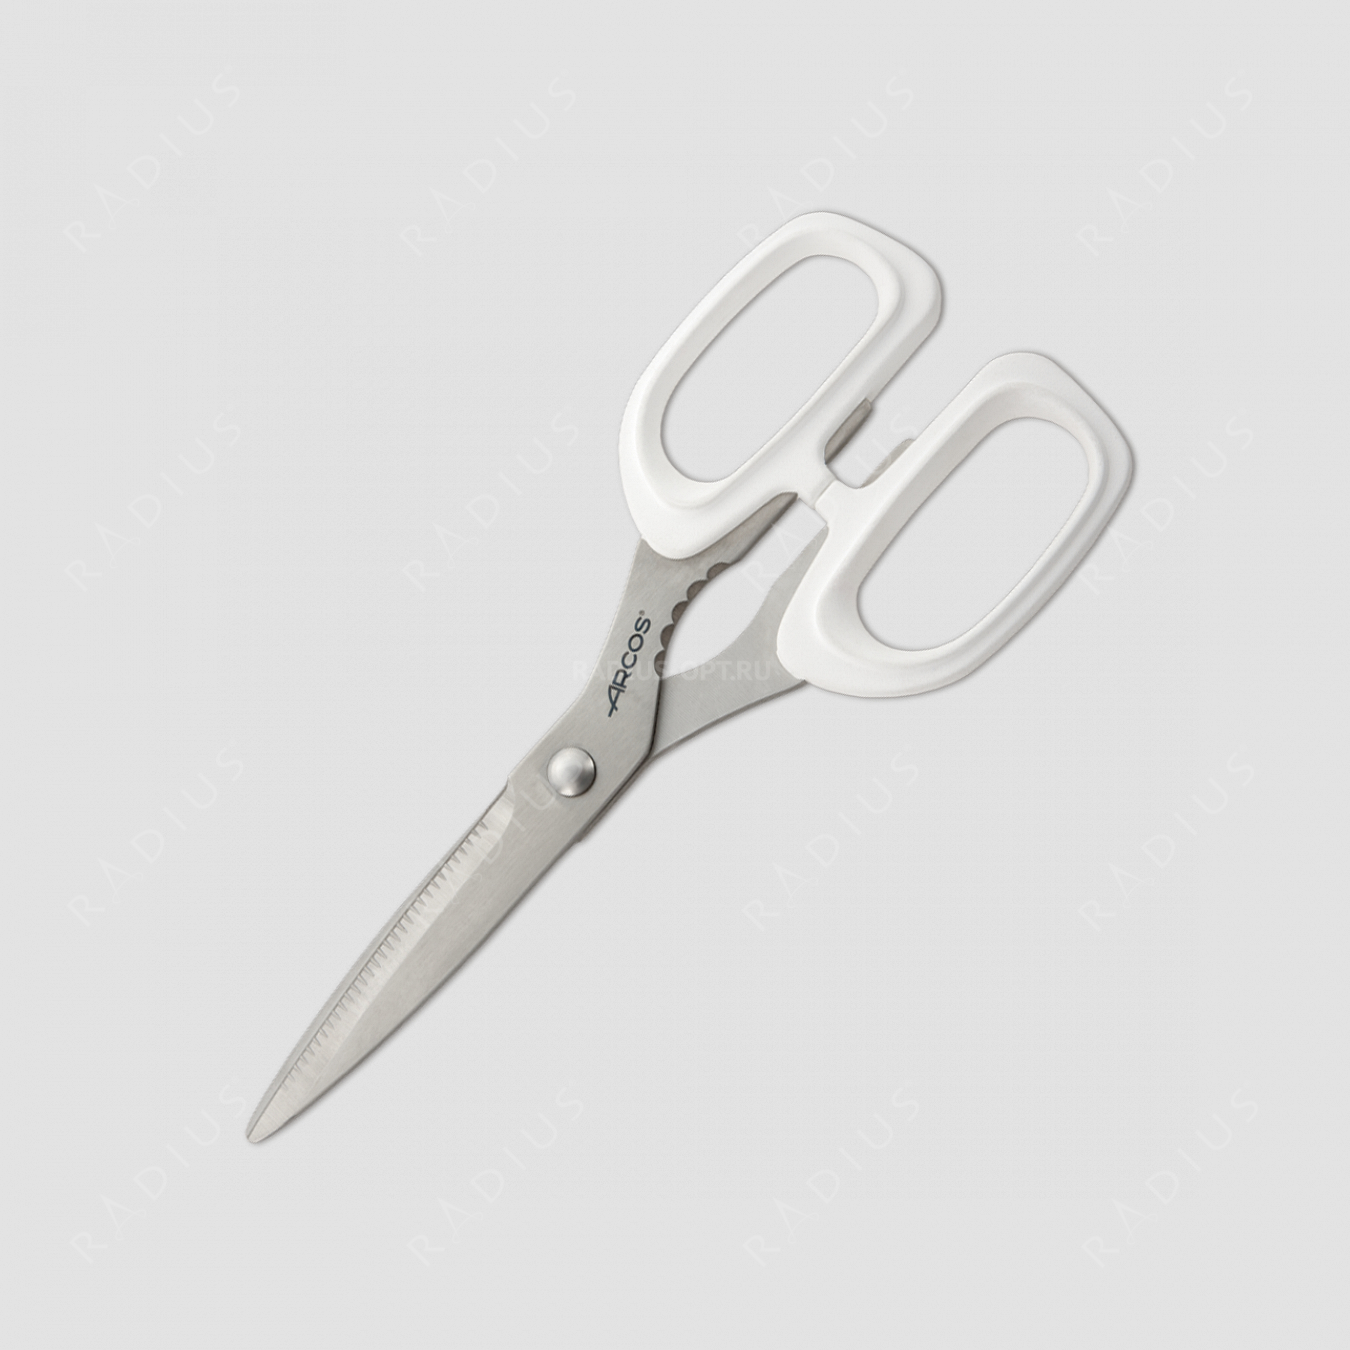 Ножницы кухонные 20 см, ручки белый пластик, серия Scissors, ARCOS, Испания